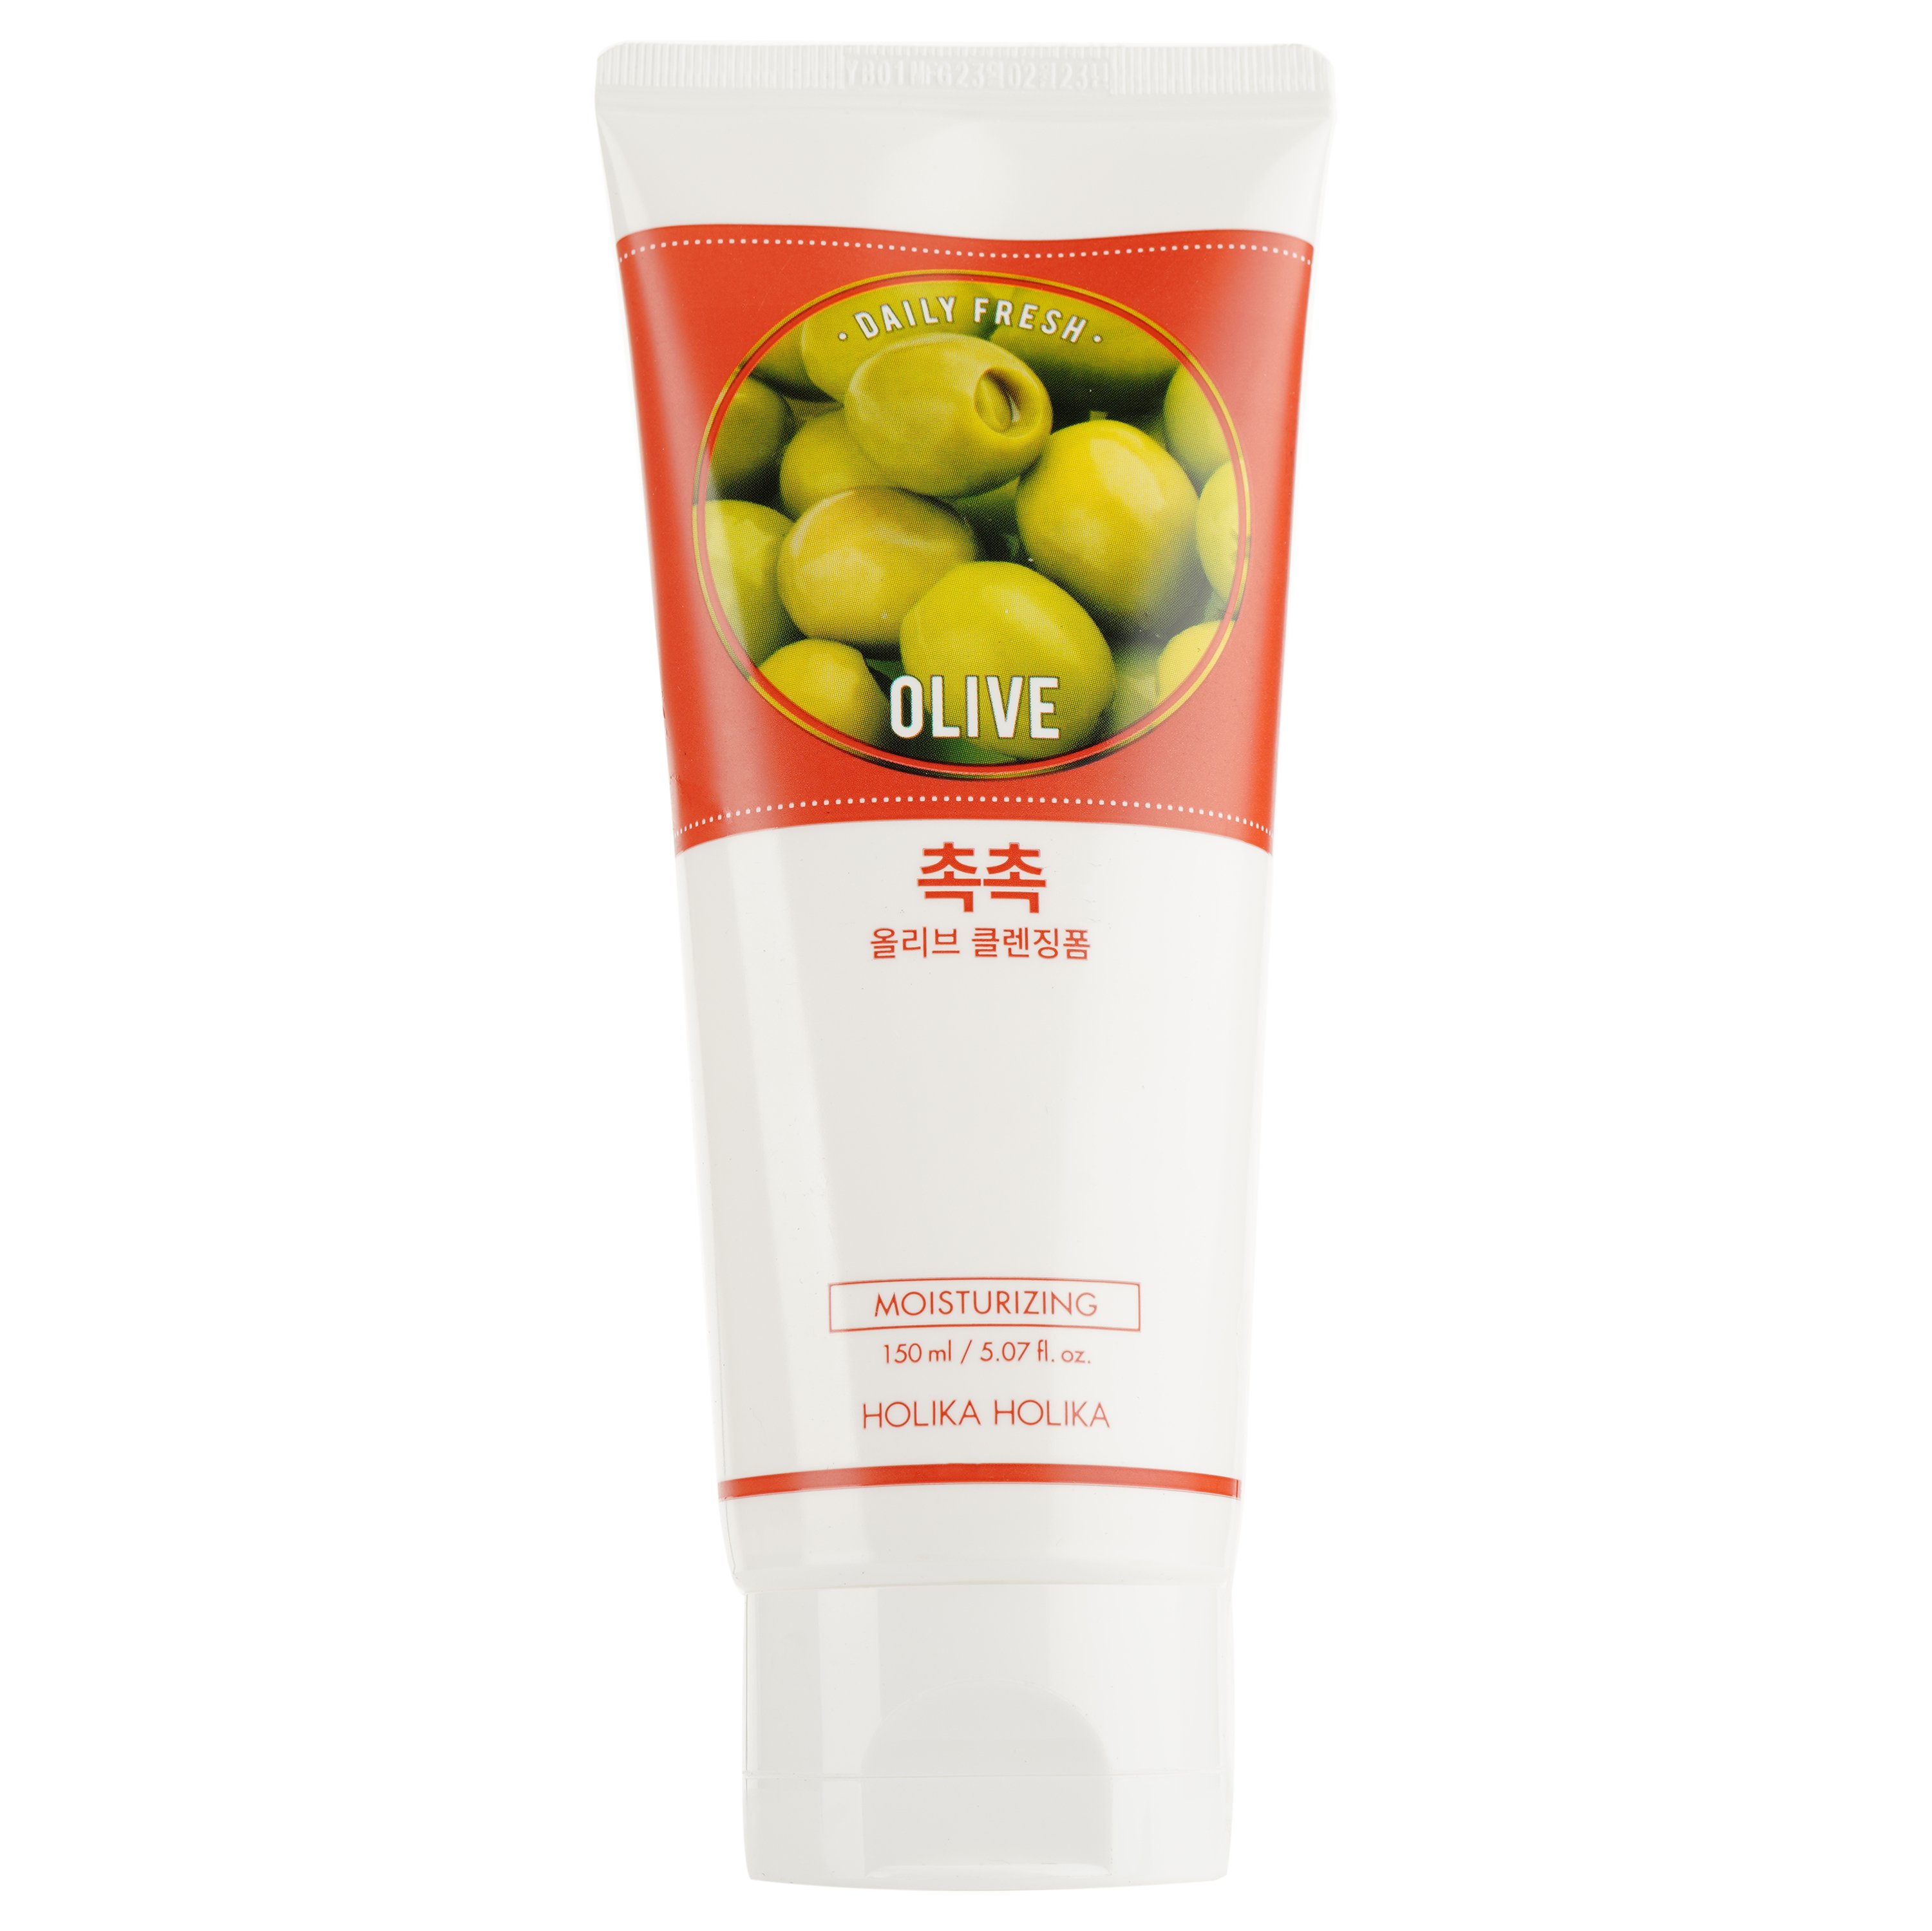 Пенка для умывания Holika Holika Daily Fresh Olive Cleansing Foam с экстрактом оливы, 150 мл - фото 1